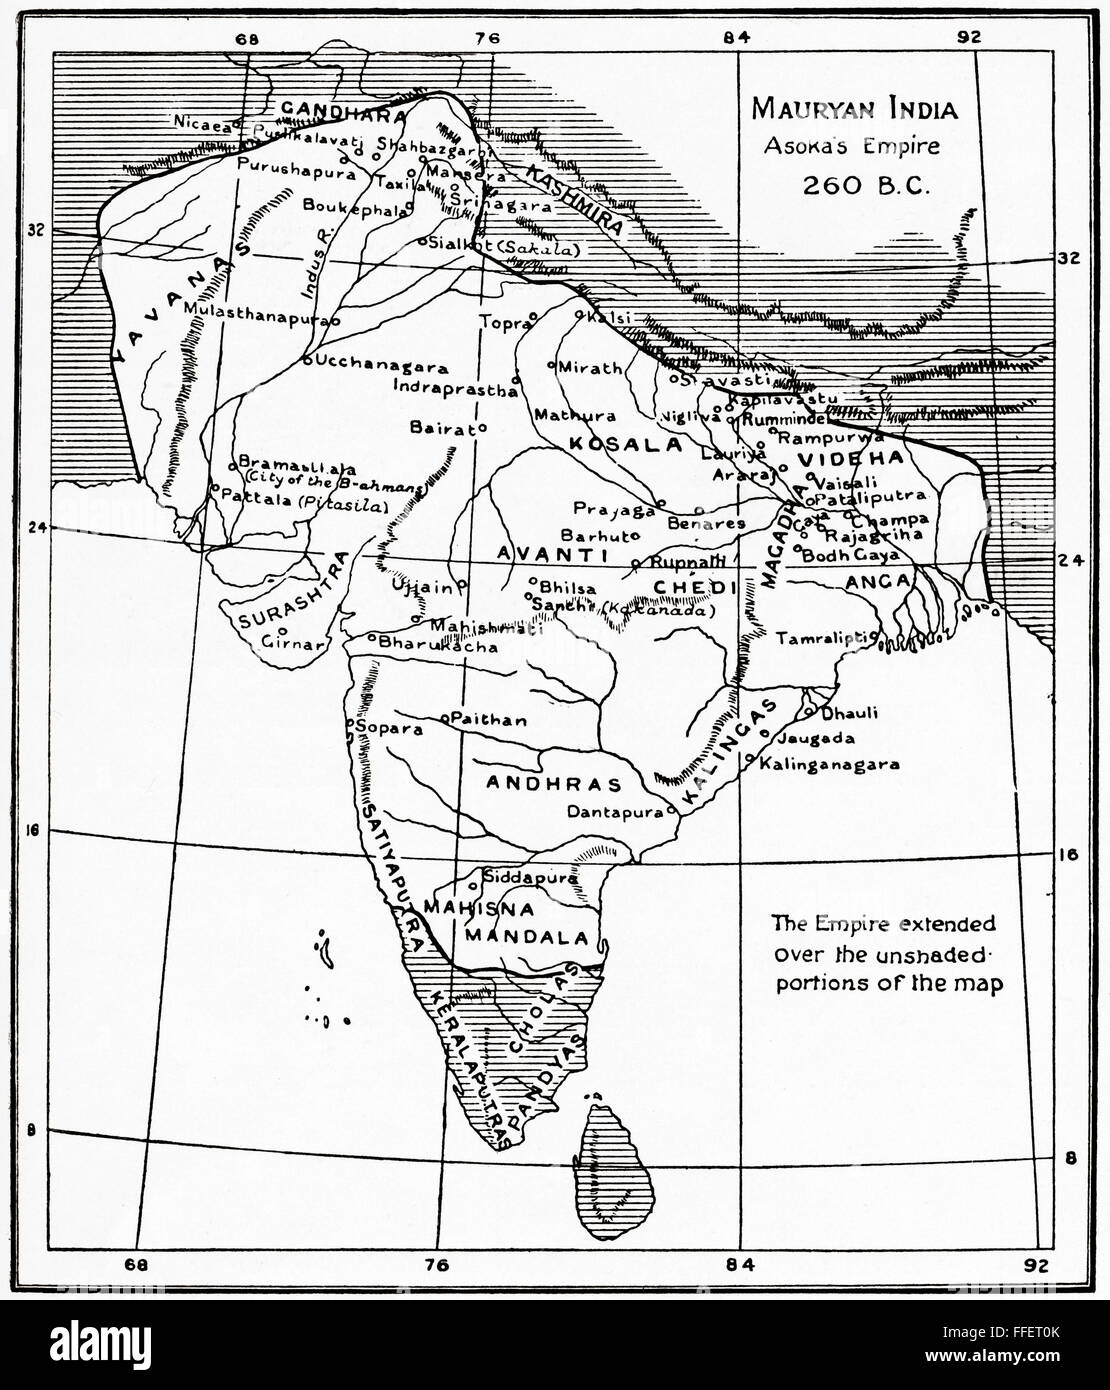 Karte von Mauryan Indien, Asokas Reiches, 260 v. Chr..  Eine geographisch umfangreiche Eisenzeit historische macht im alten Indien, von der Maurya-Dynastie regiert.  Hutchinson Geschichte der Nationen veröffentlichte 1915. Stockfoto